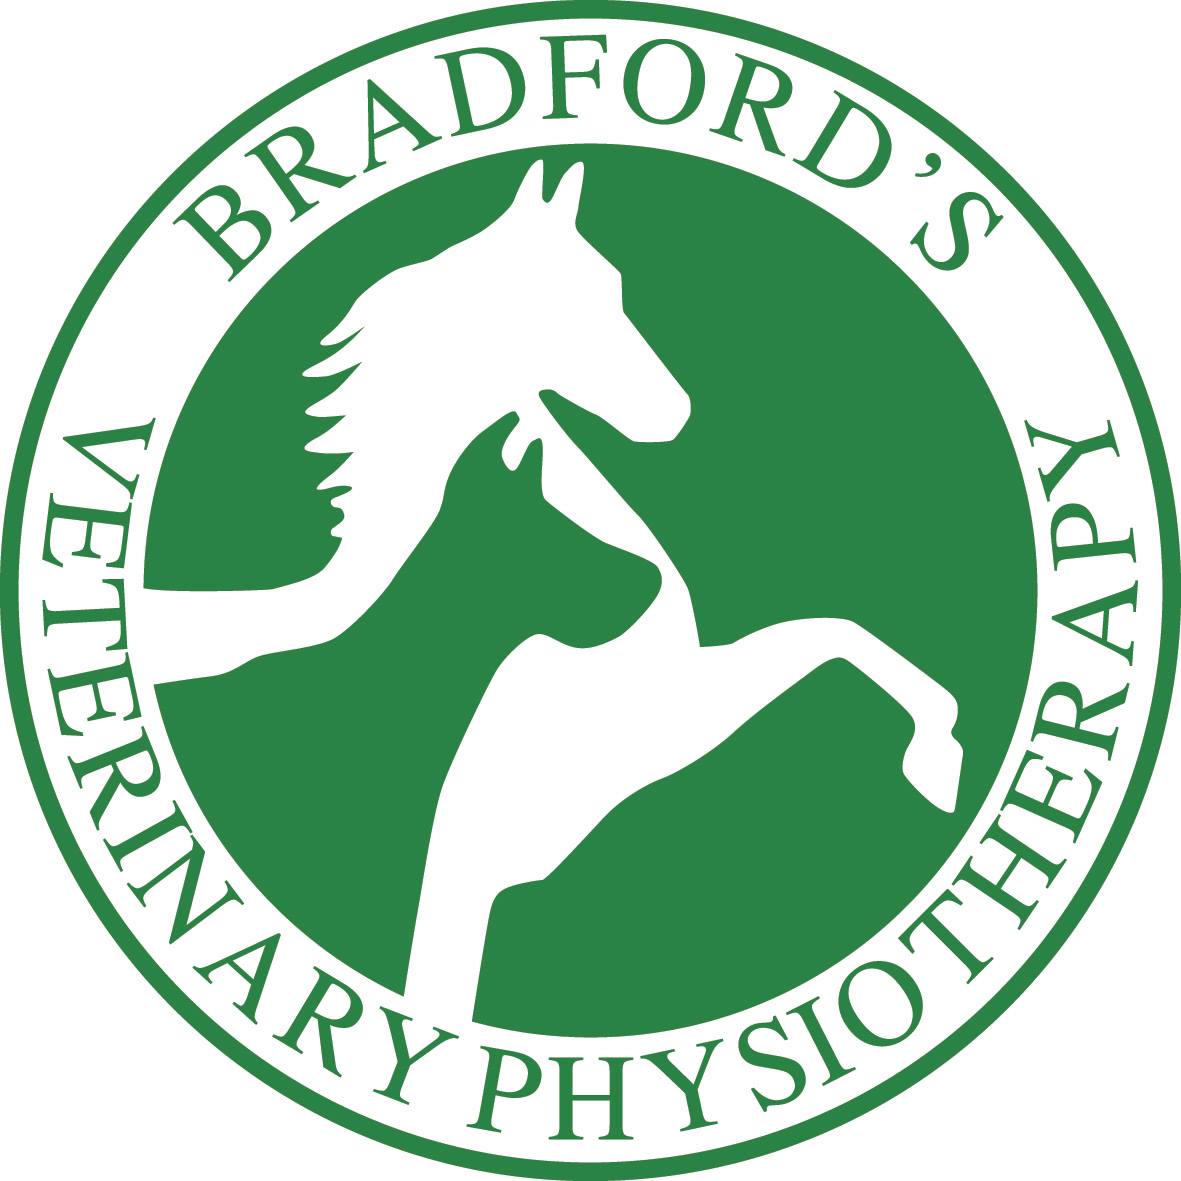 Bradfords Vet Physiotherapy